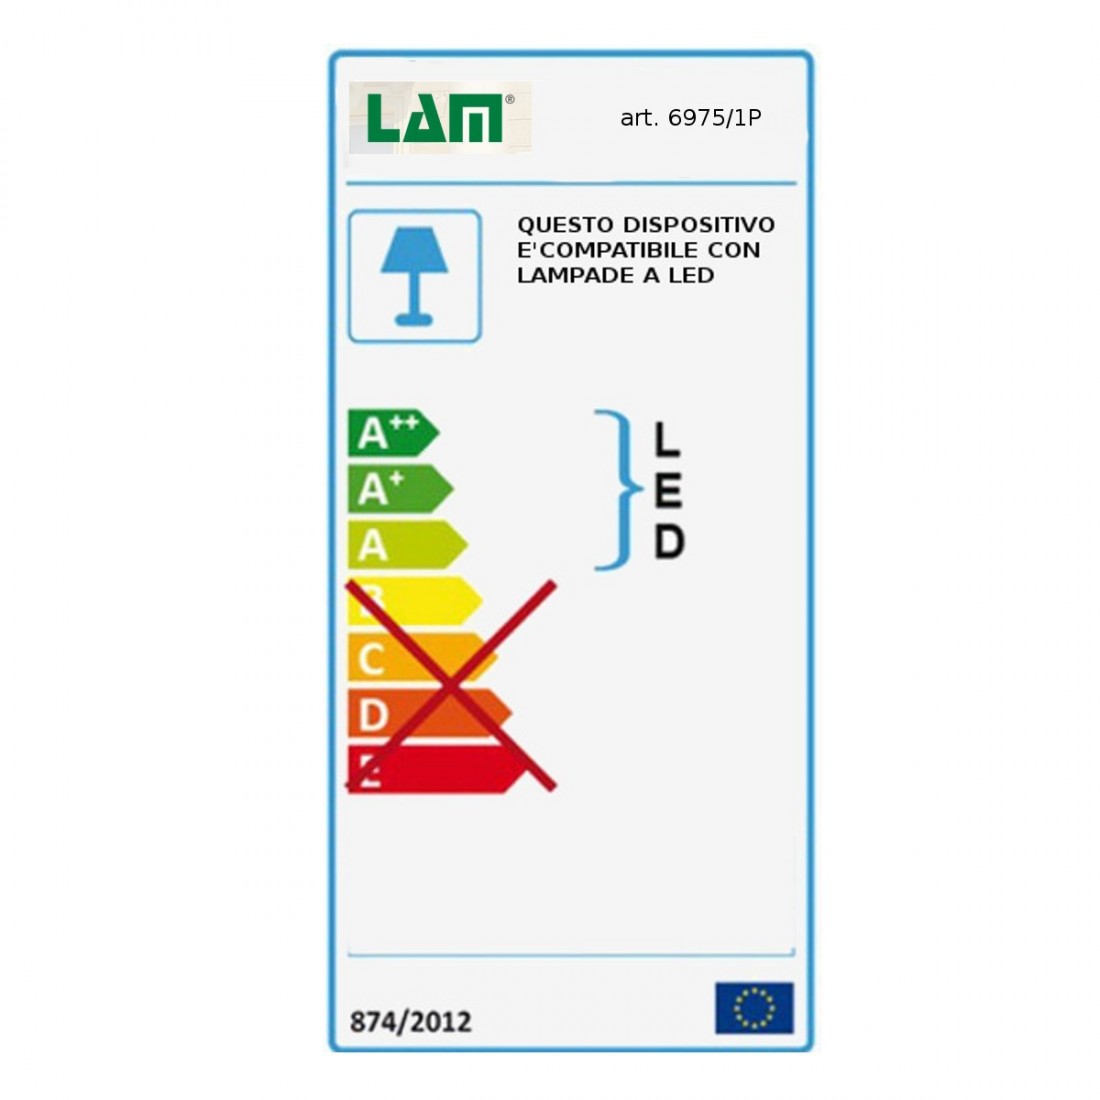 Lampadaire LM-6975 1P E27 Led plat réglable lampe classique rustique rustique intérieur en métal bruni